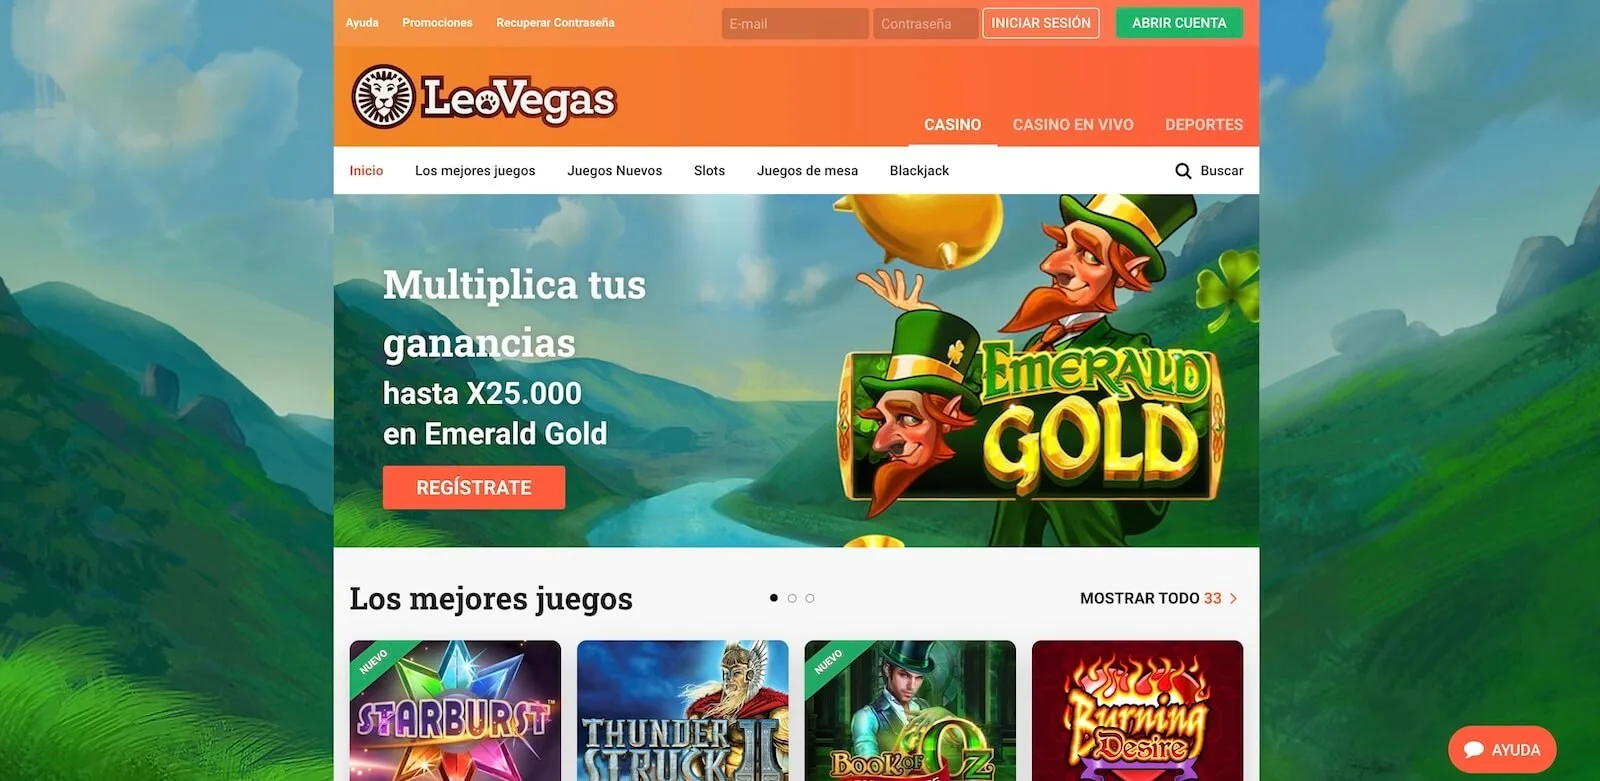 LeoVegas Casino Online Espana